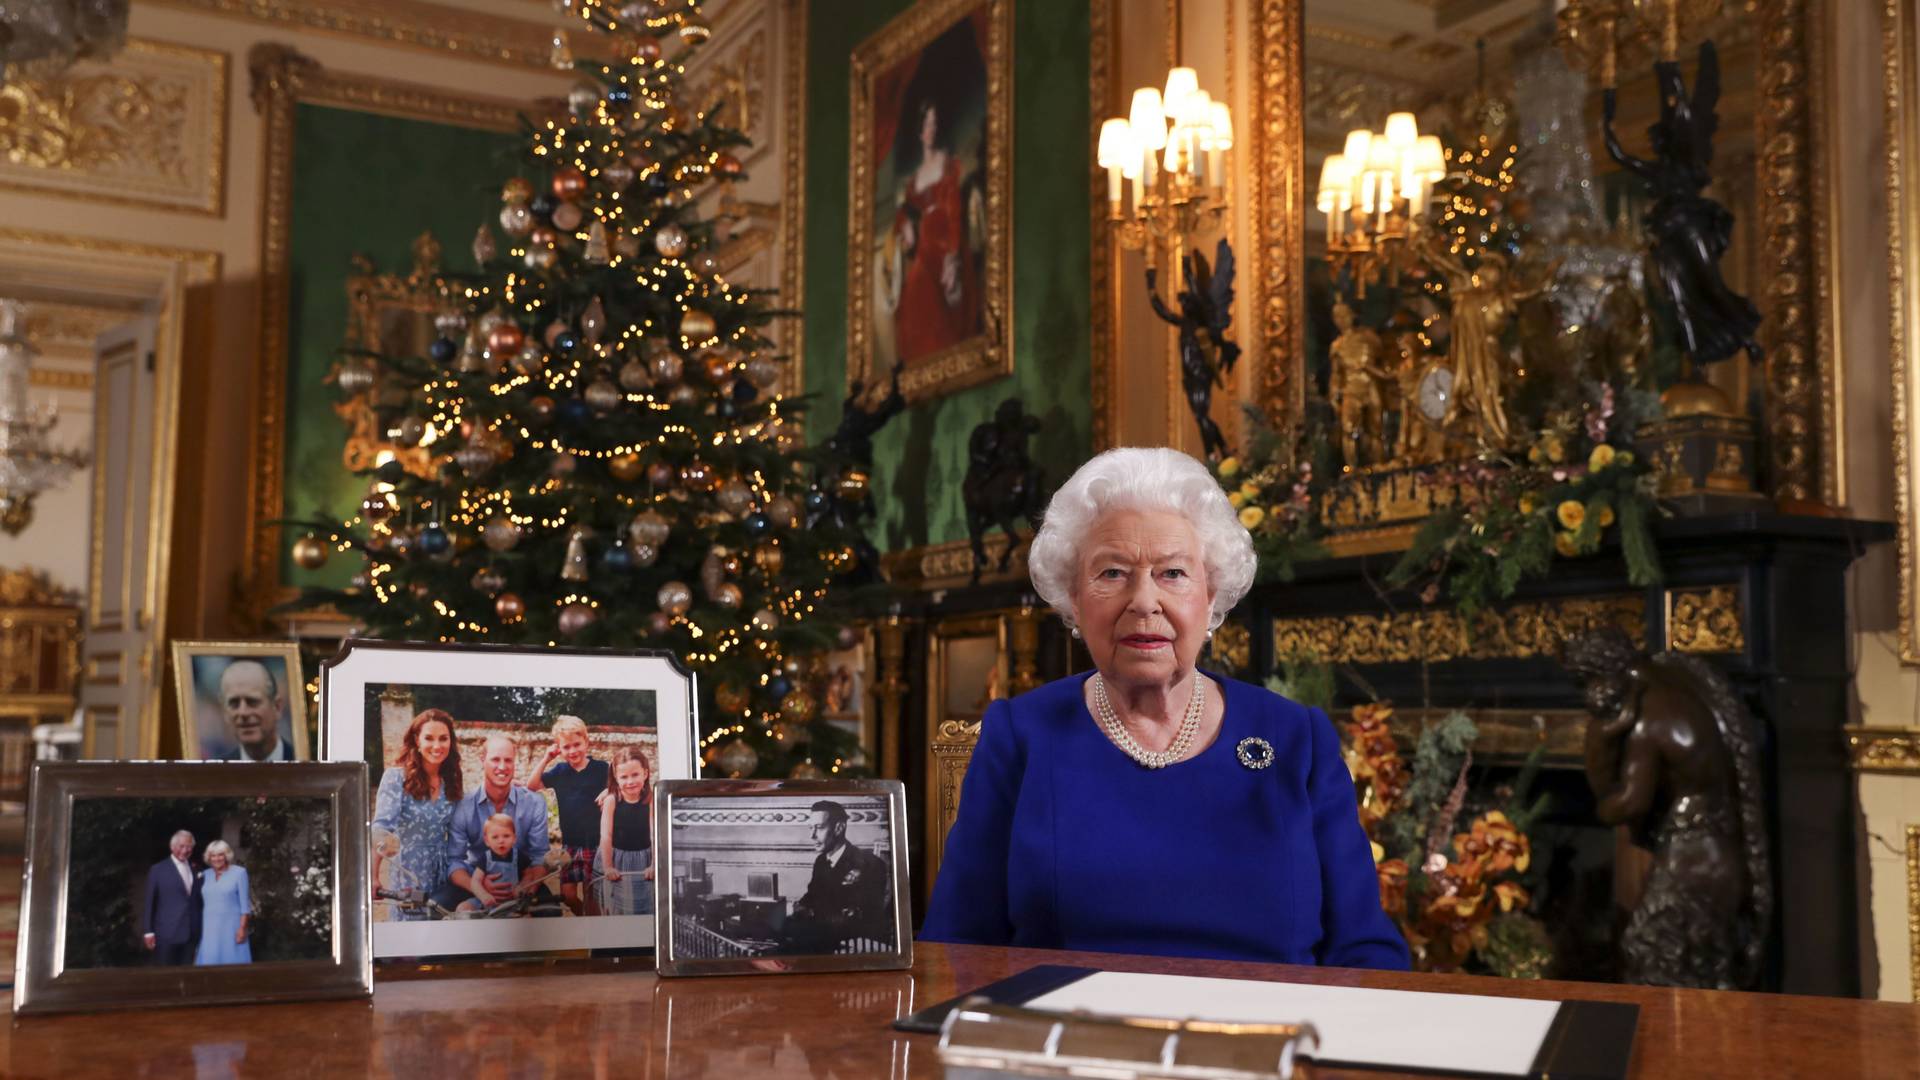 To zdjęcie mówi samo za siebie. Na świątecznym biurku królowej nie ma zdjęcia Meghan i Harry'ego